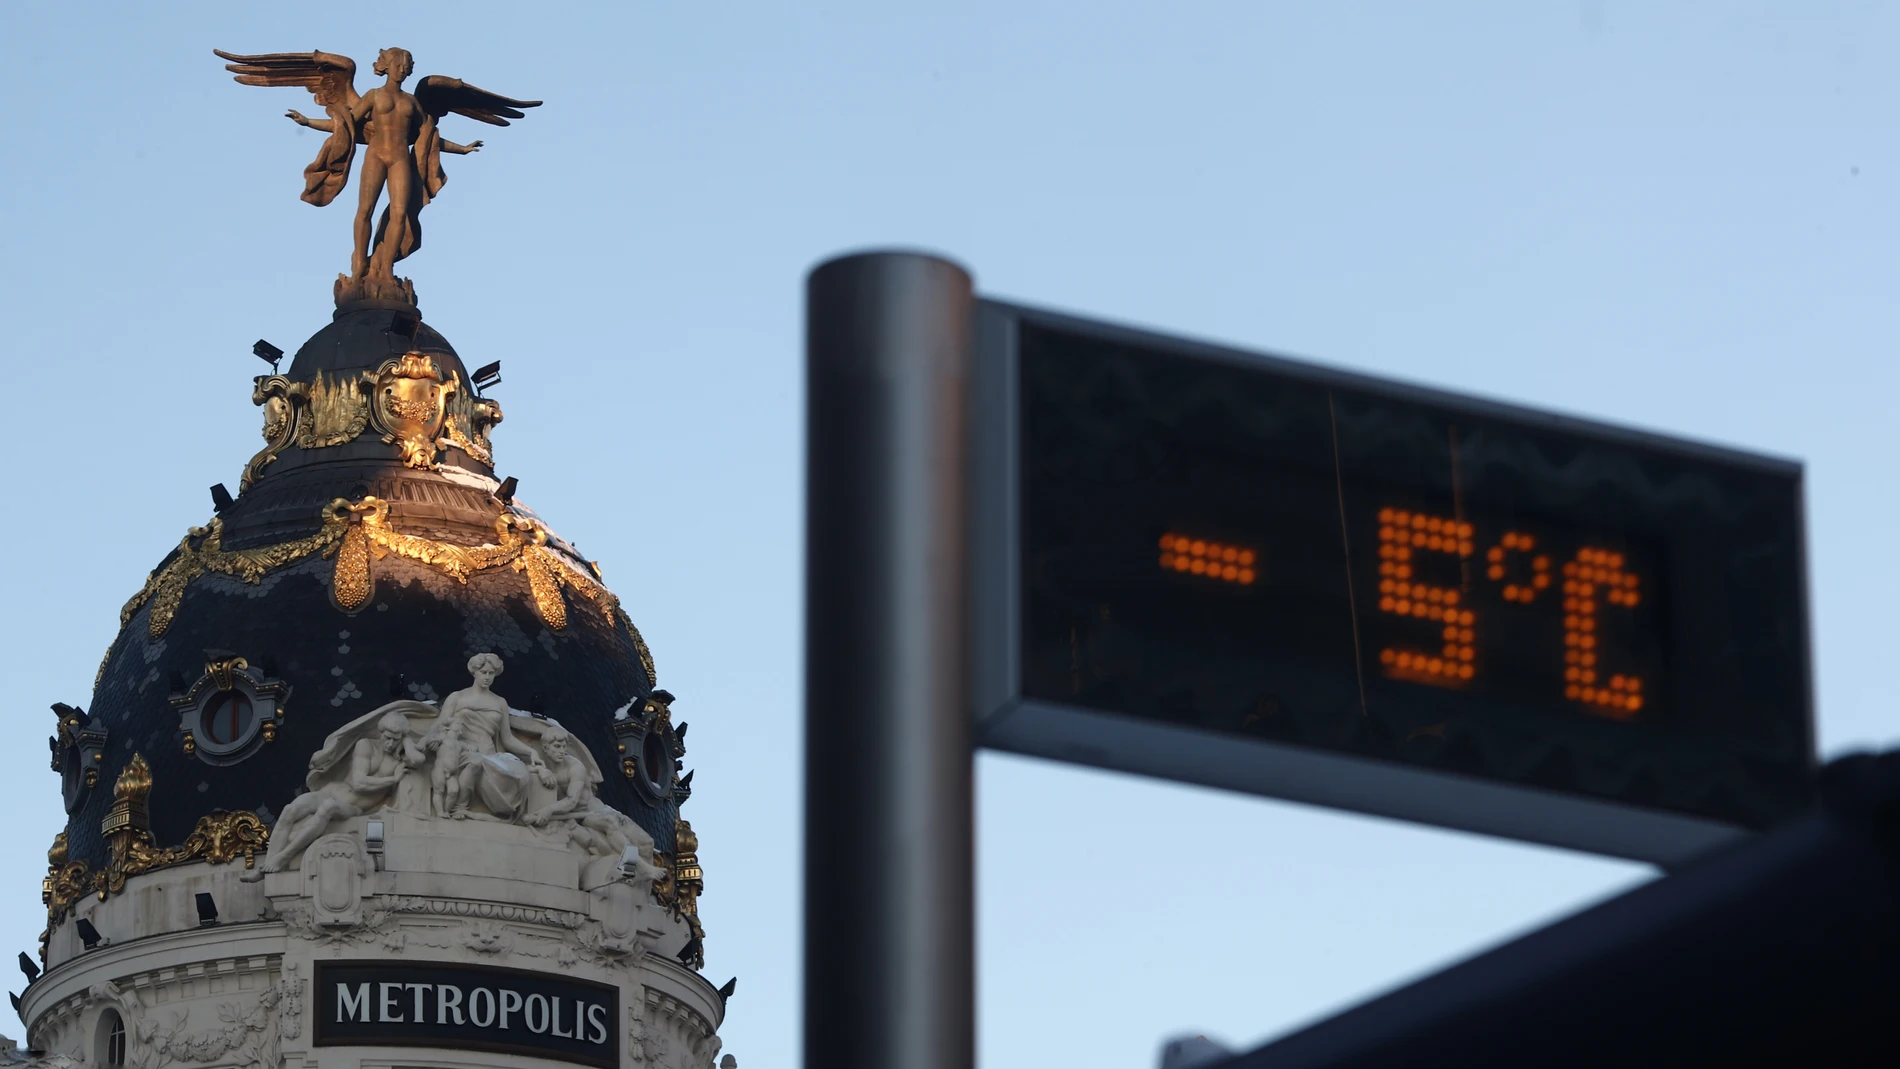 Un termómetro situado en una parada de autobús cercana al edificio de Metrópolis marca -5 grados centígrados (ºC), en Madrid